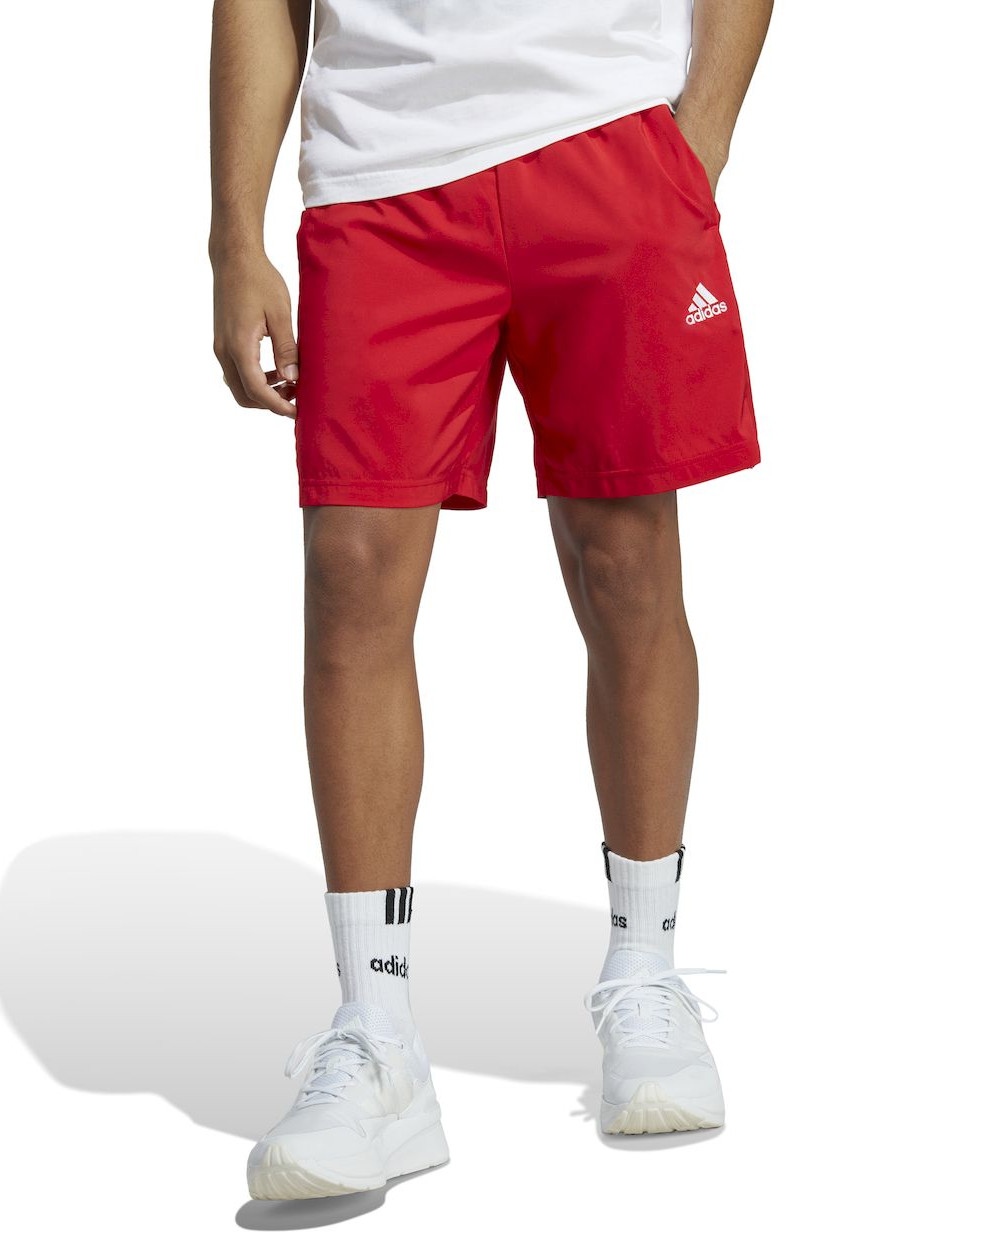  Pantaloncini Shorts UOMO Adidas 3 Stripes Chelsea Woven Rosso con tasche